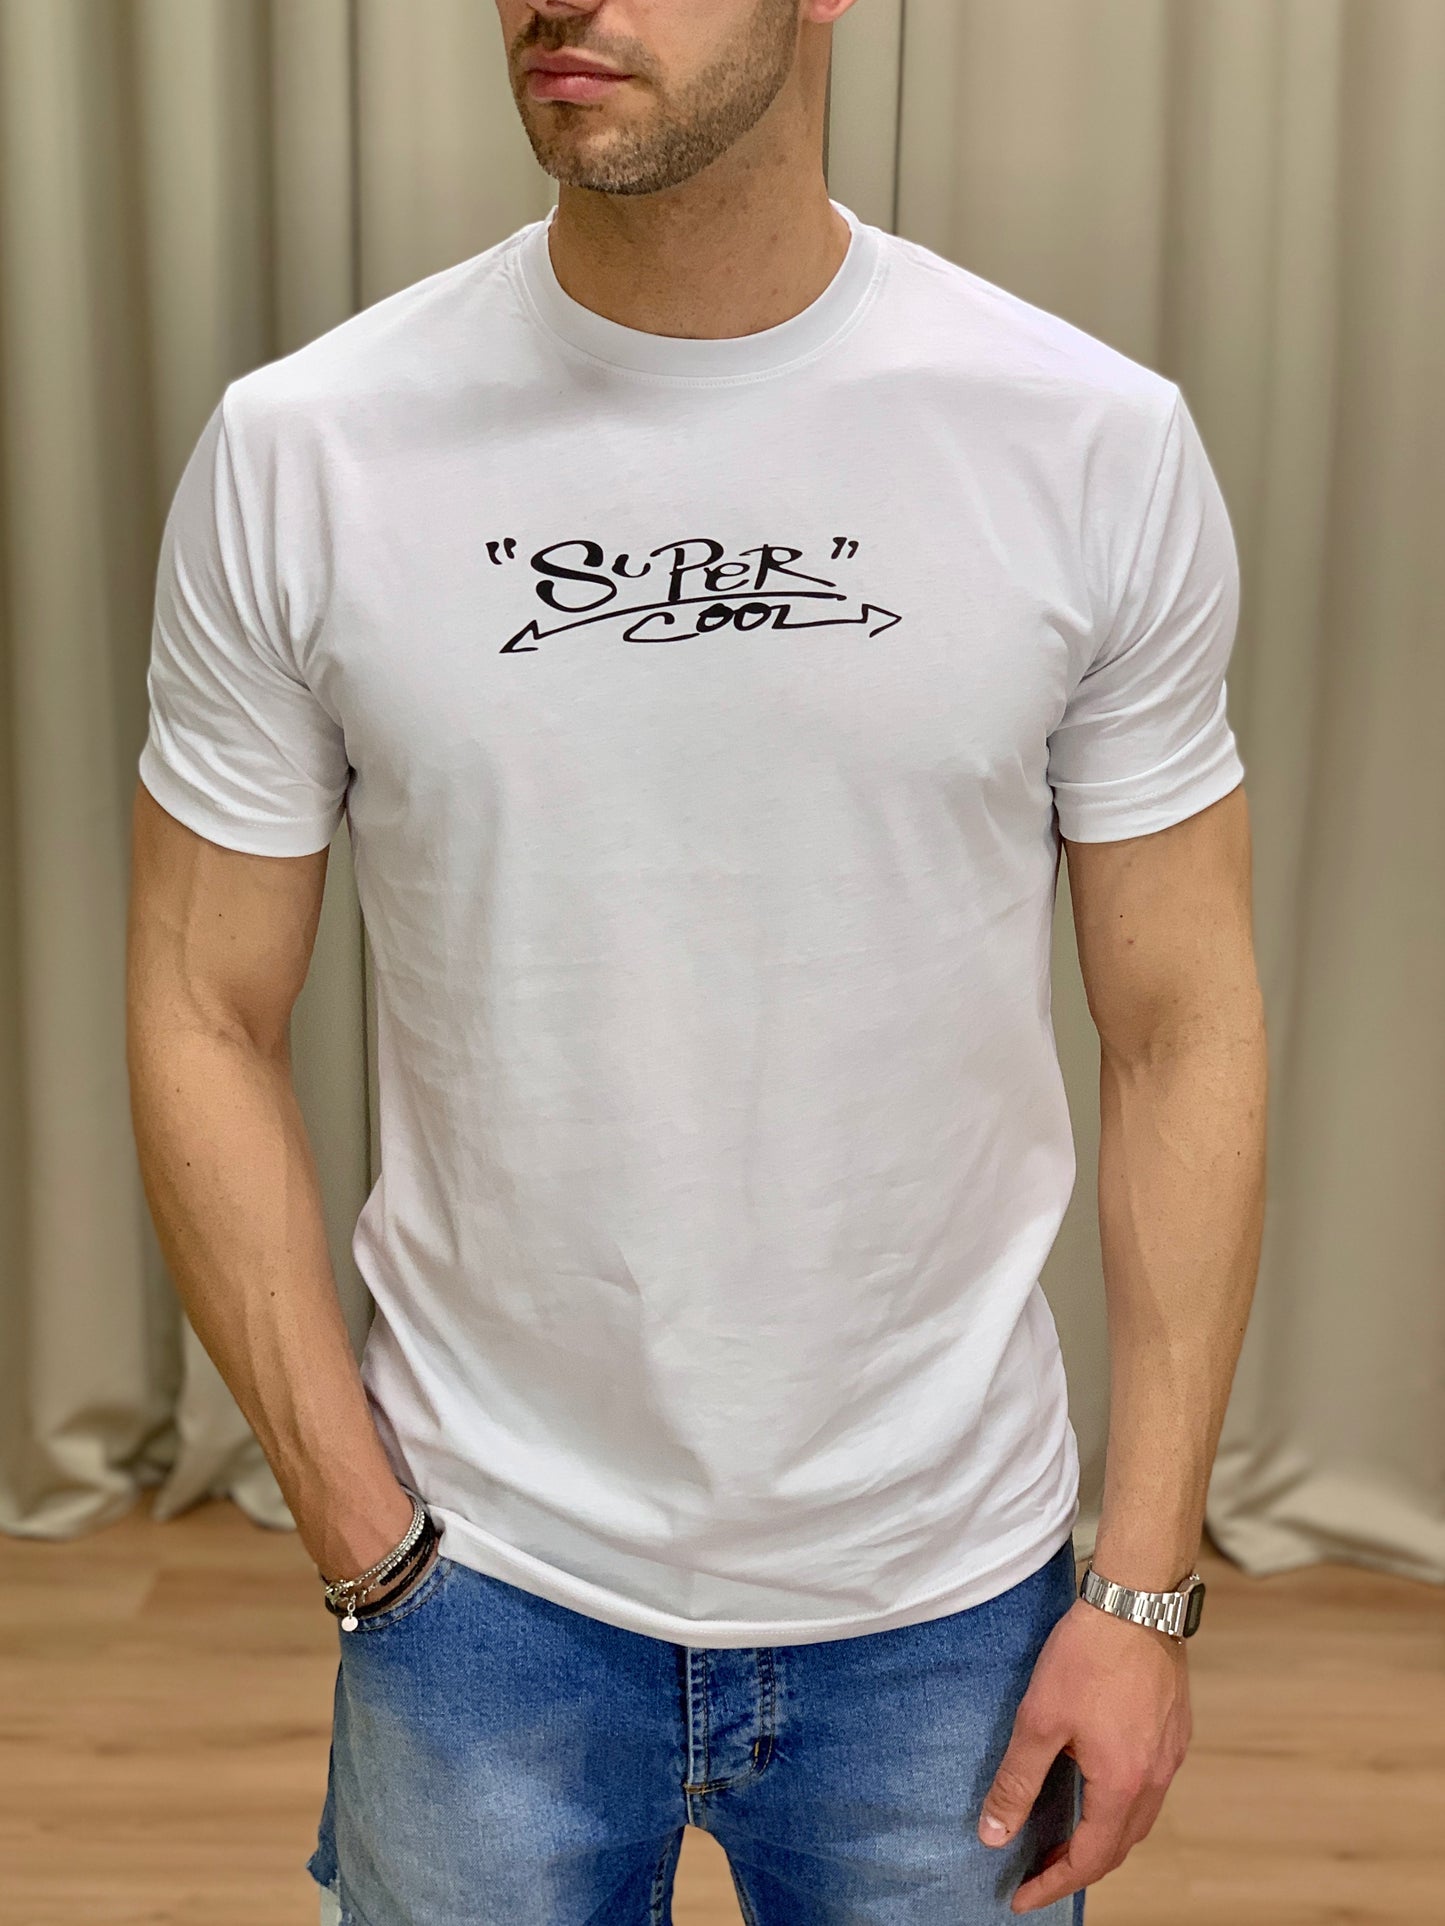 T-shirt Super Cool col. Bianco